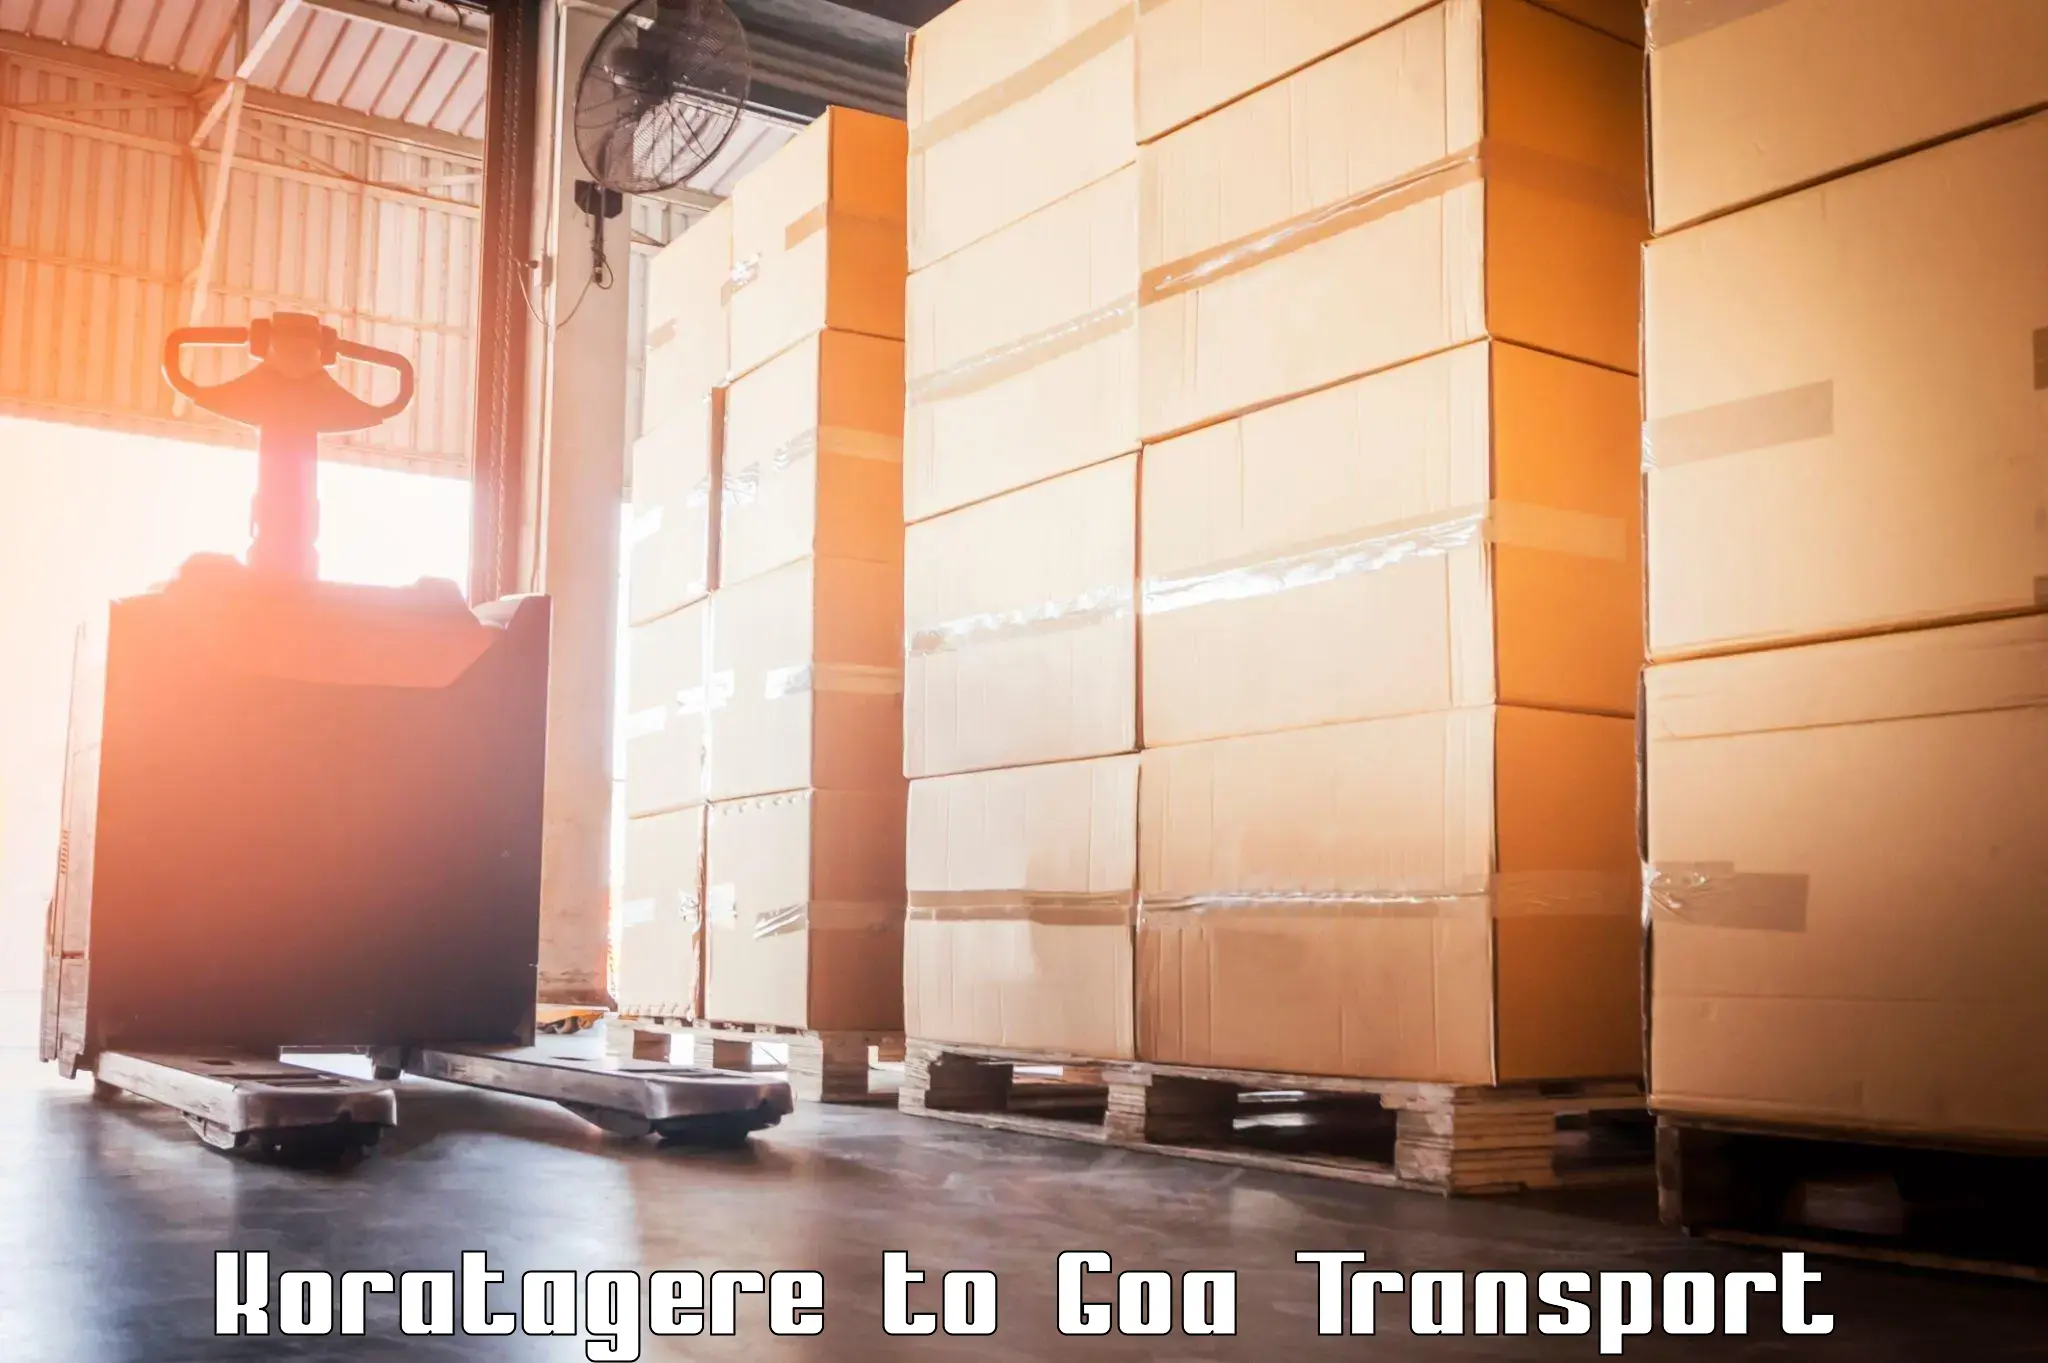 Transport in sharing Koratagere to Panjim